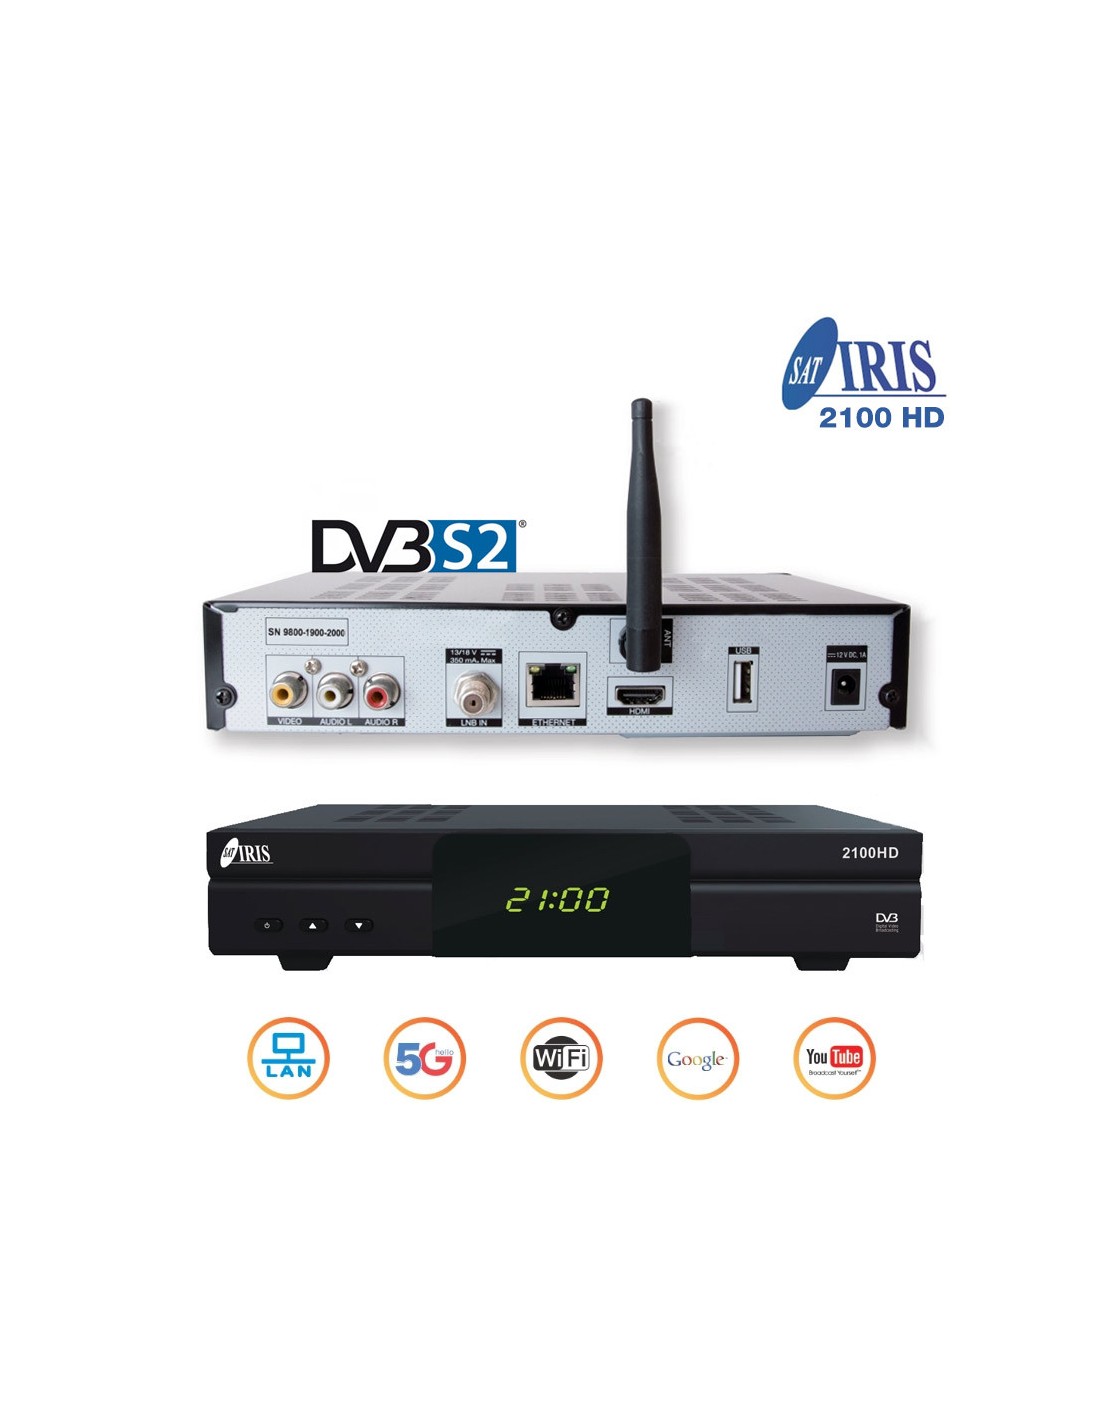 Actualizar firmware Iris 2100 HD - Blog DiscoAzul.com